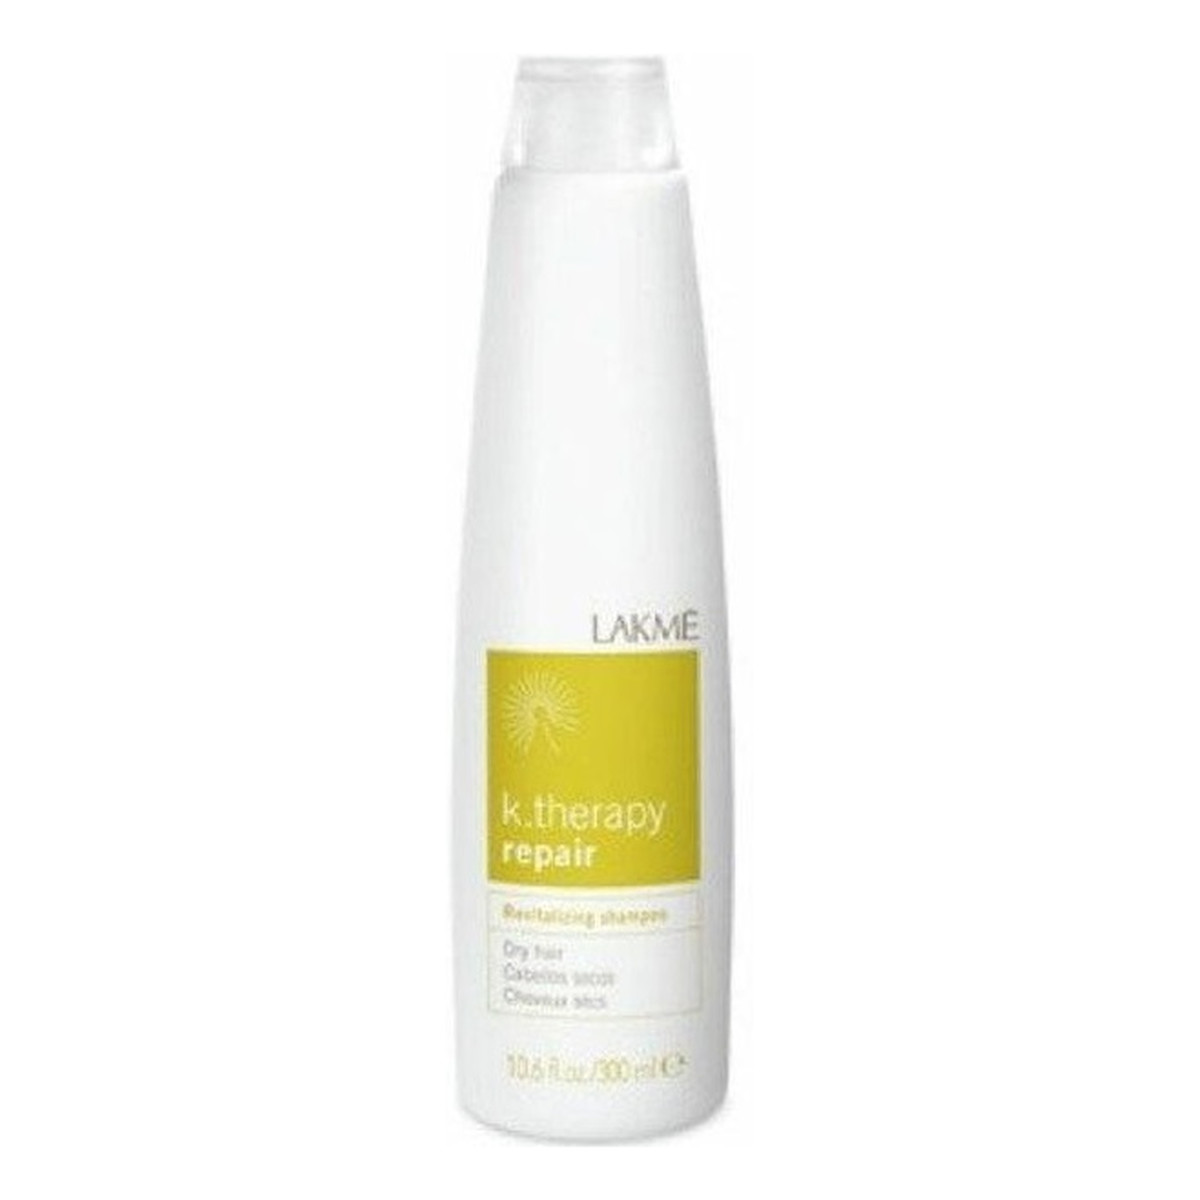 Lakme K. therapy repair shampoo szampon rewitalizujący do włosów suchych i bardzo suchych 300ml